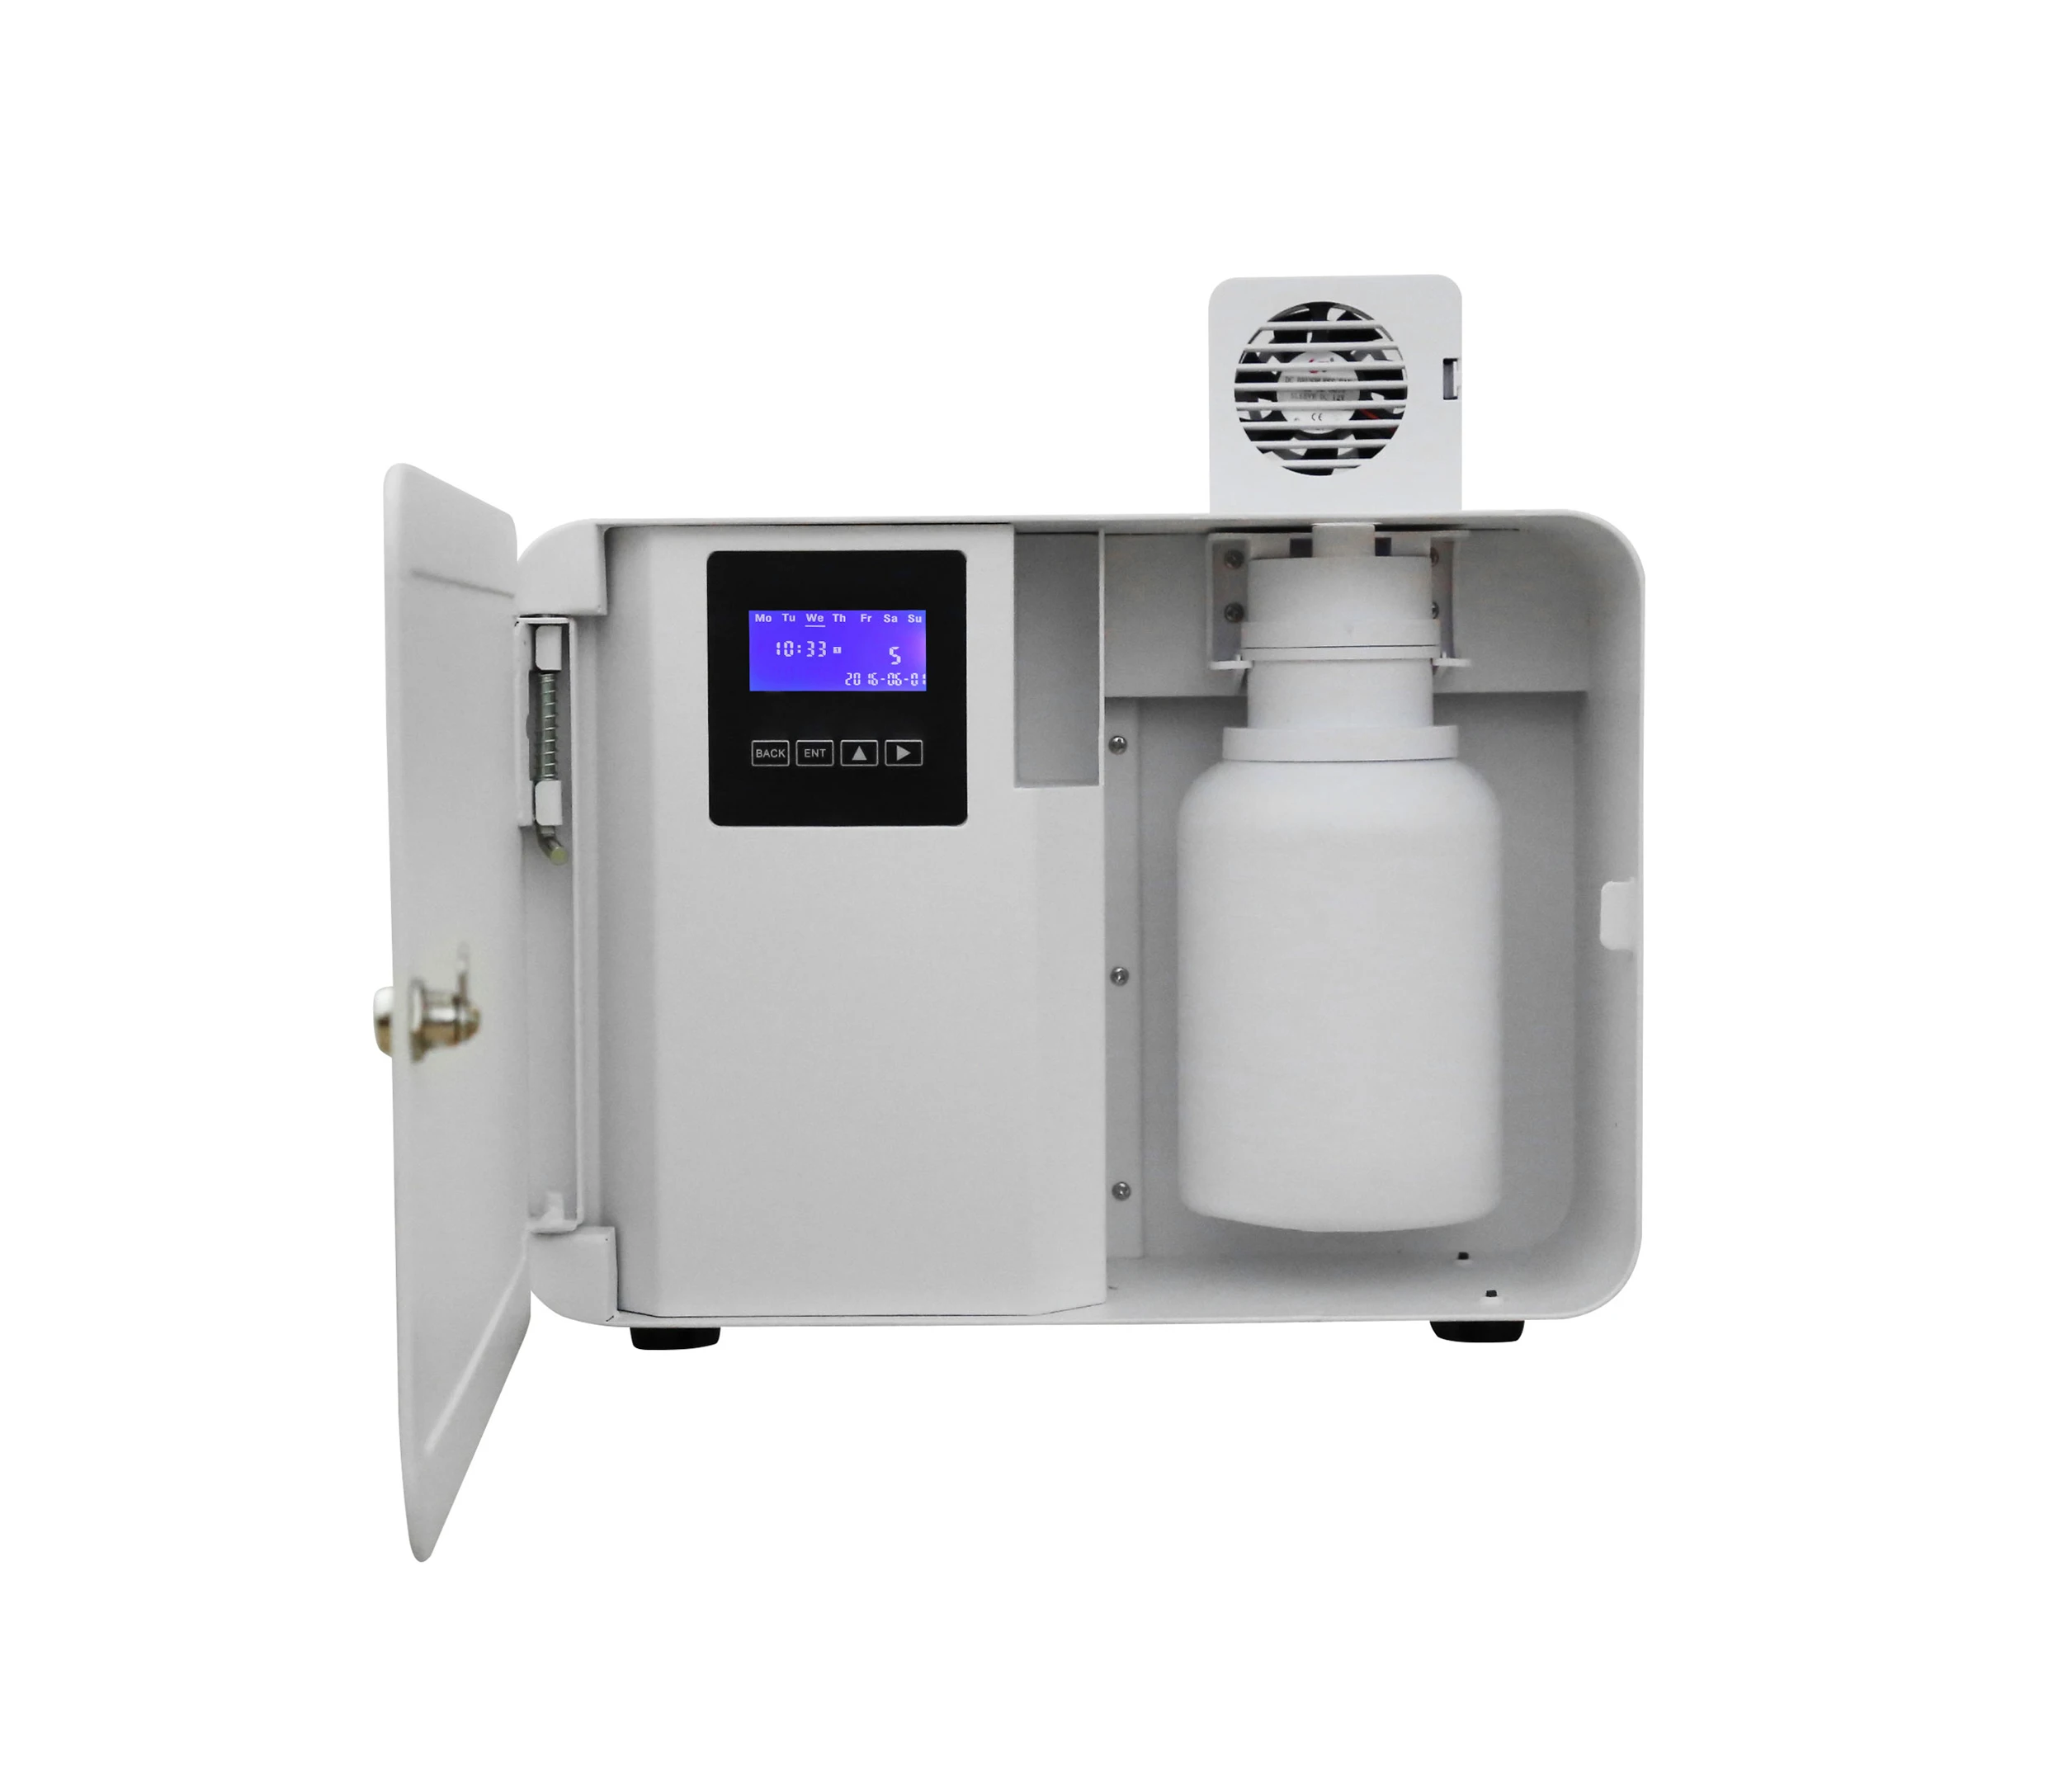 

Экологически чистый Ароматизатор воздуха, коммерческий ароматизатор для бизнеса